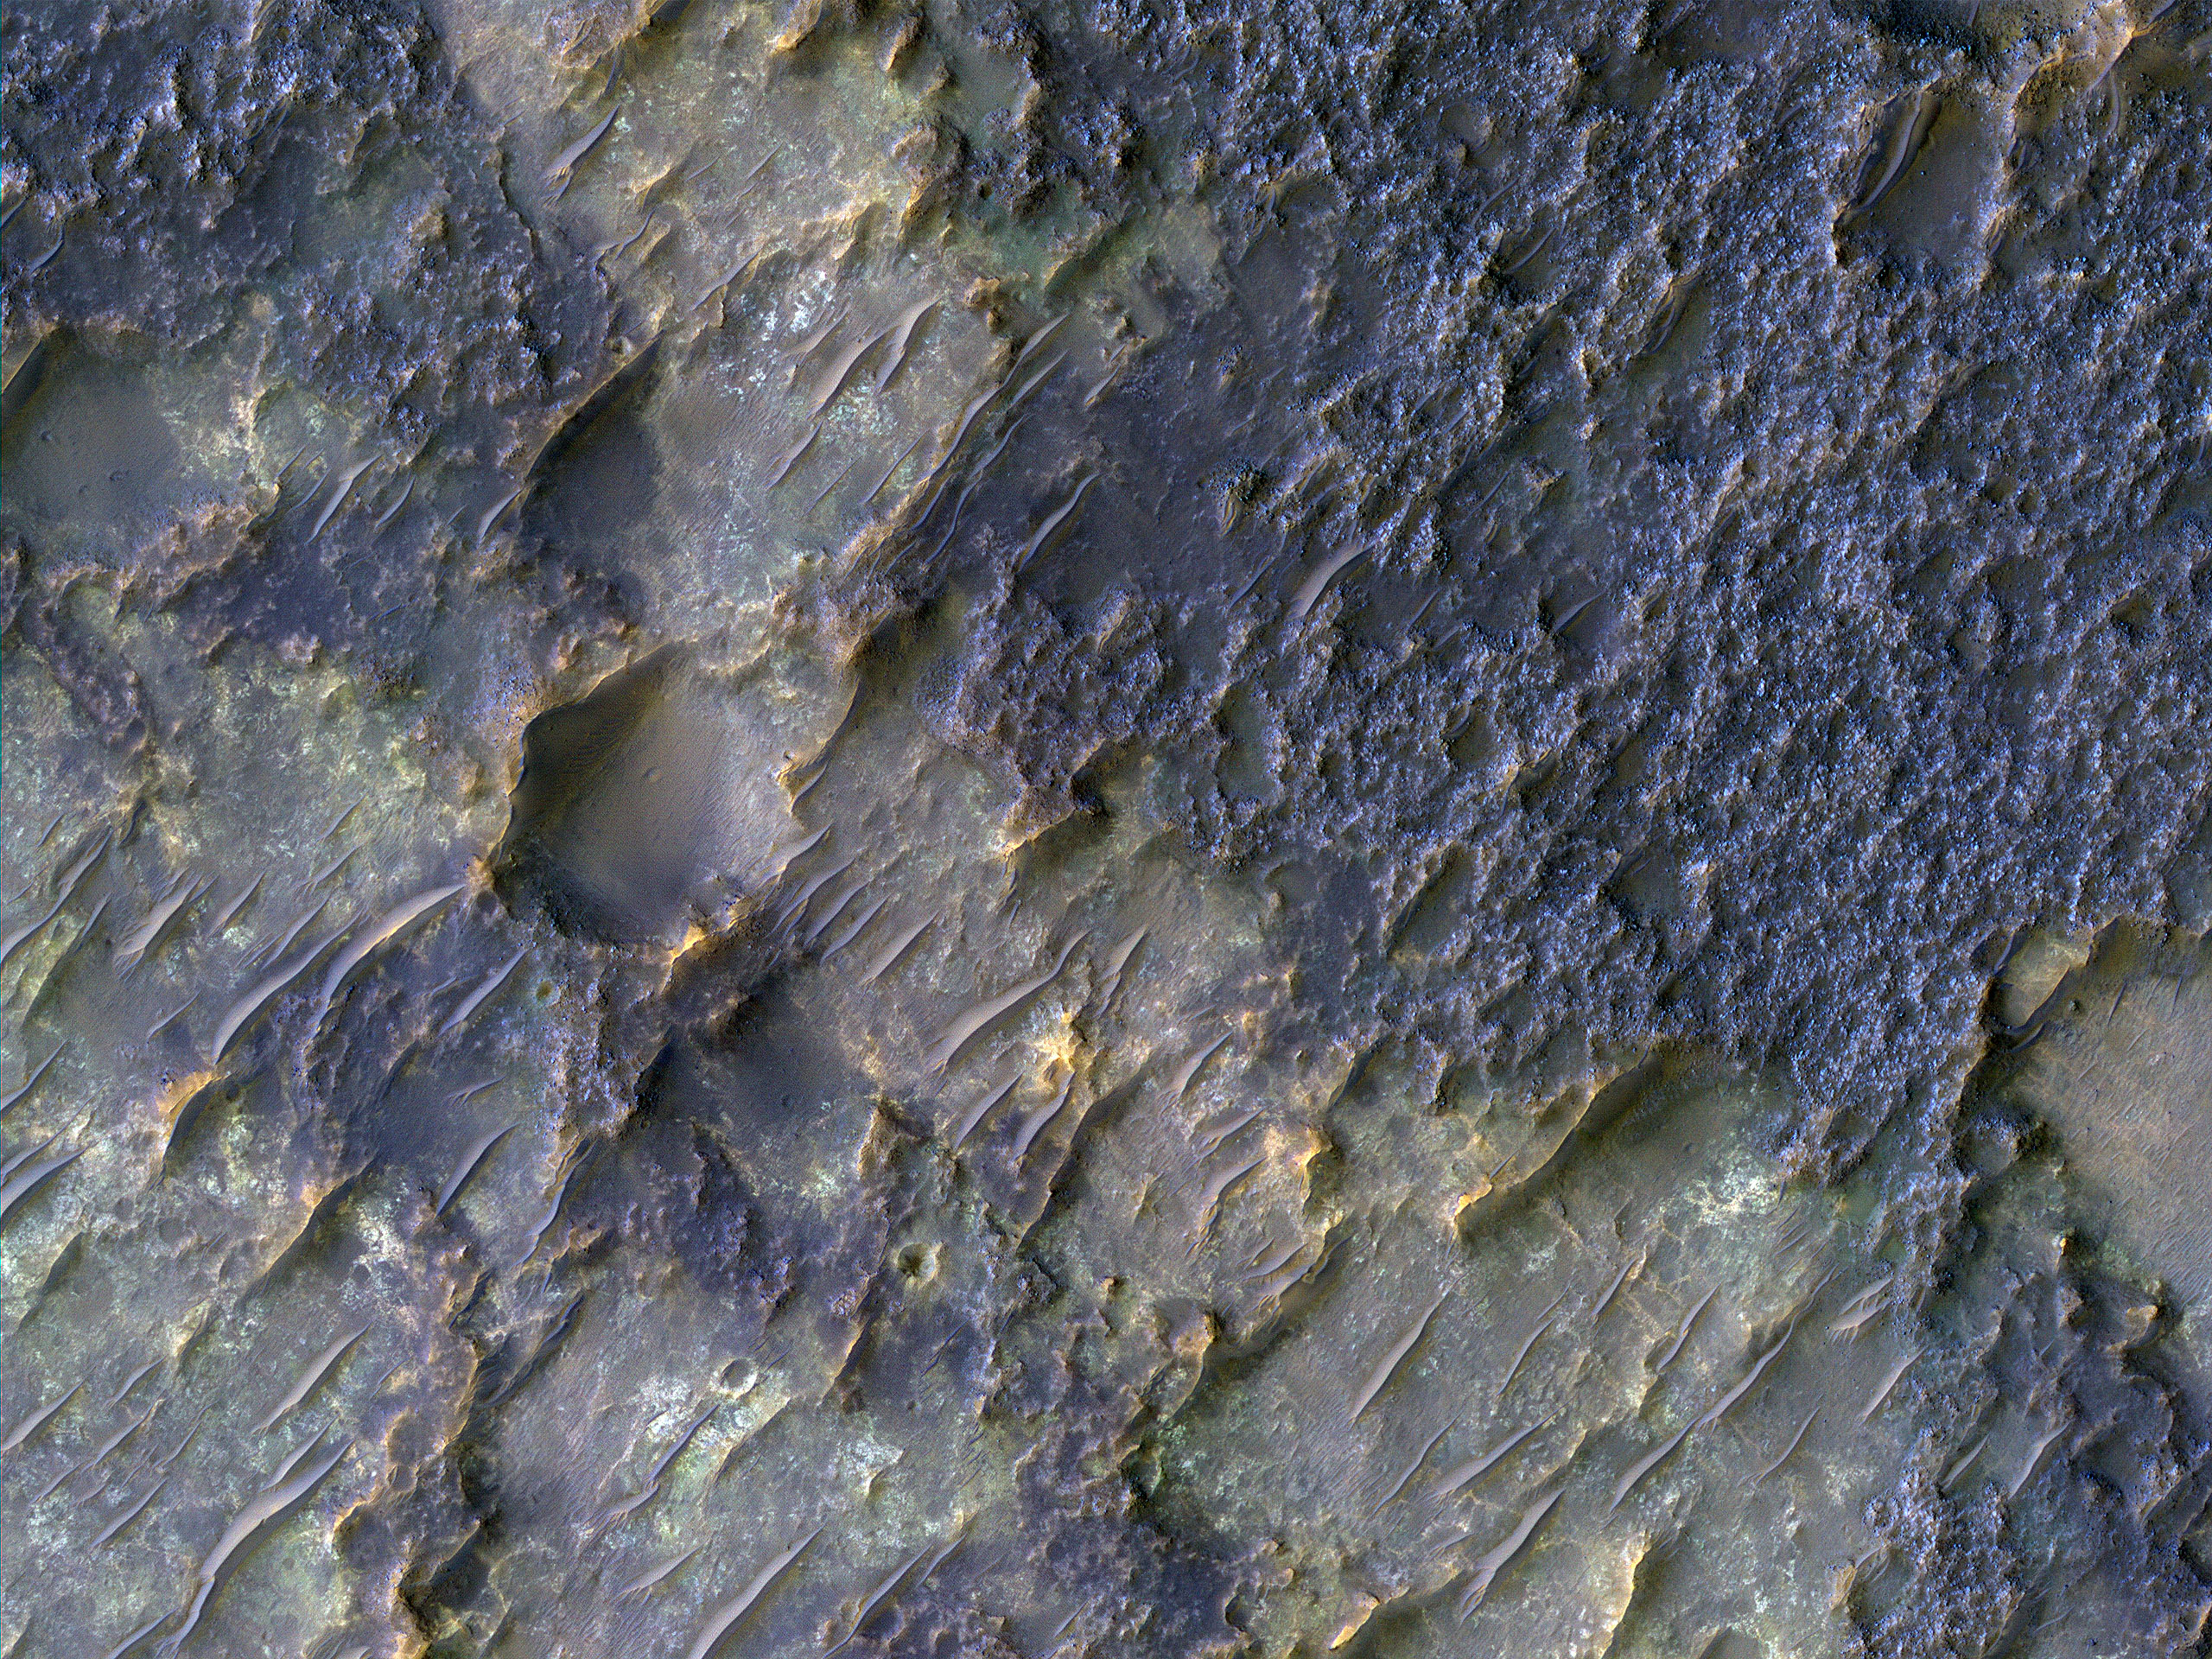 Contact between Two Distinct Types of Bedrock Northwest of Hellas Planitia